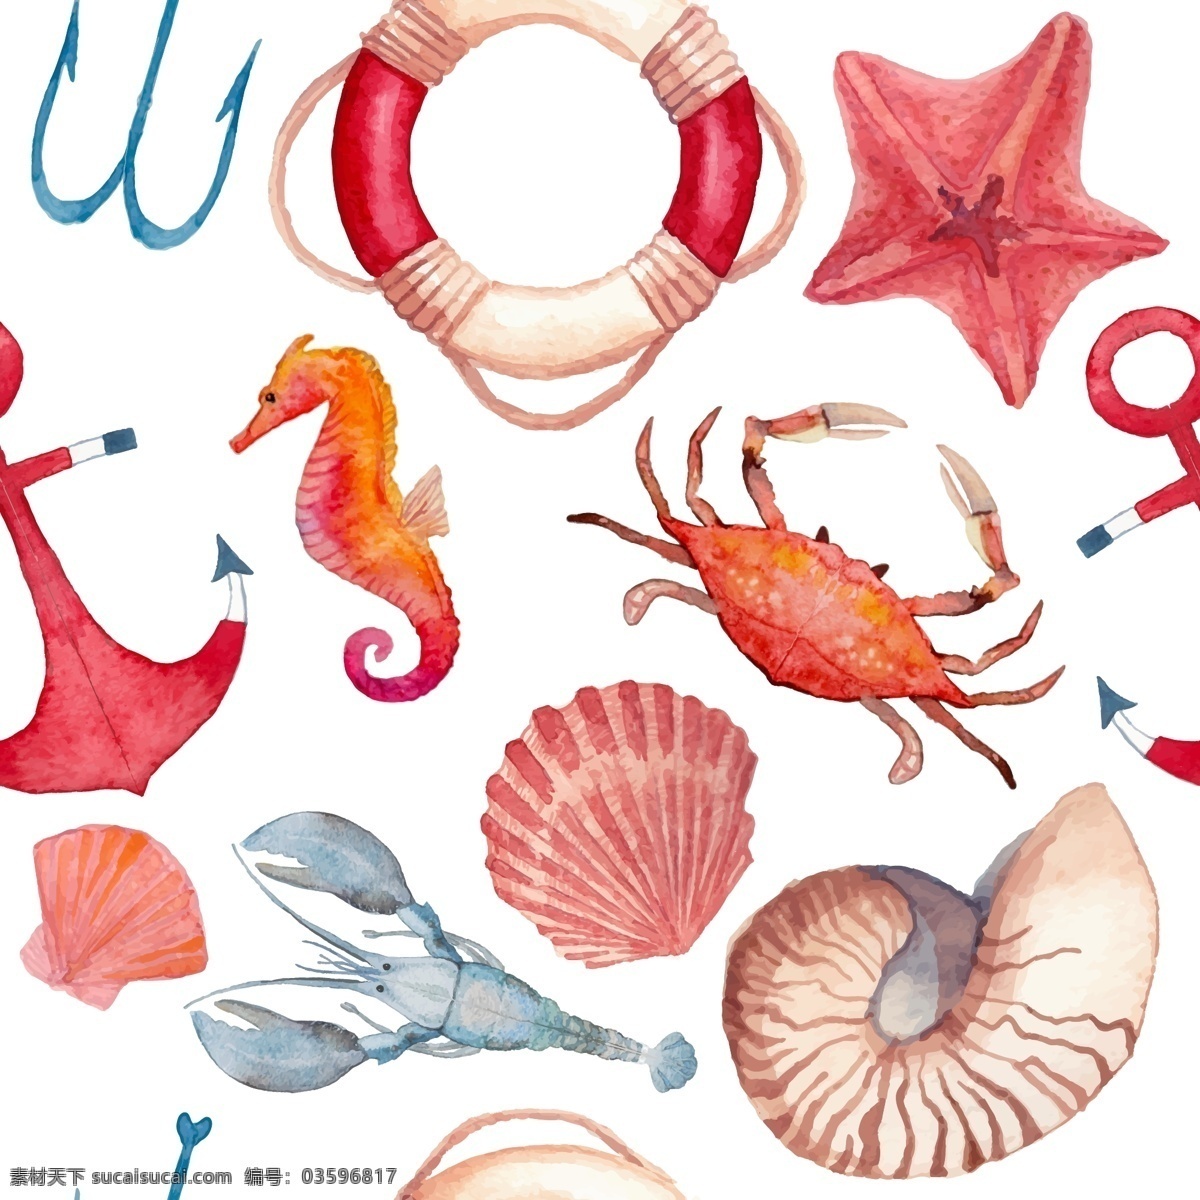 时尚 手绘 海洋 动物 插画 贝壳 海螺 海马 海星 螃蟹 水彩绘